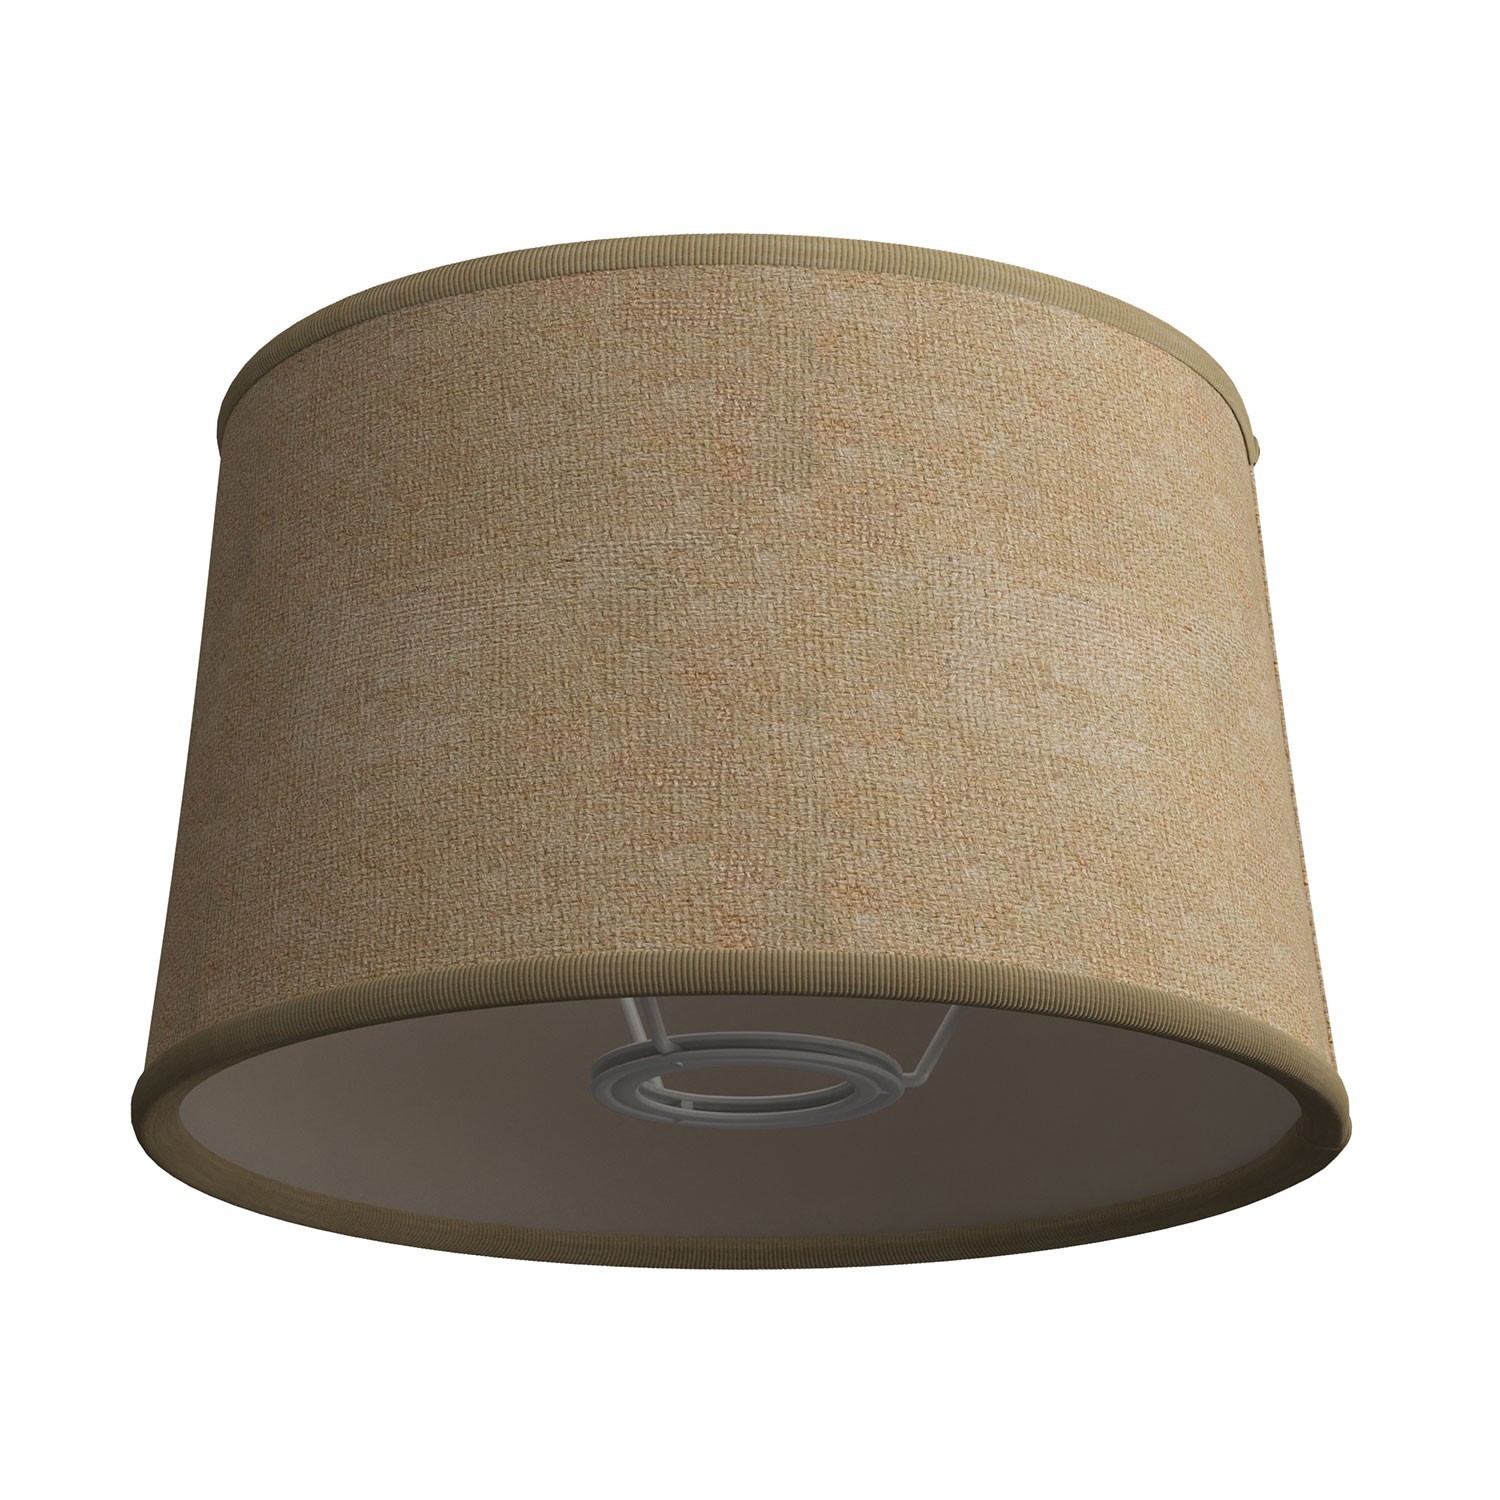 Pantalla o caperuza Athena para casquillo E27 para lámpara de mesa - Made in Italy